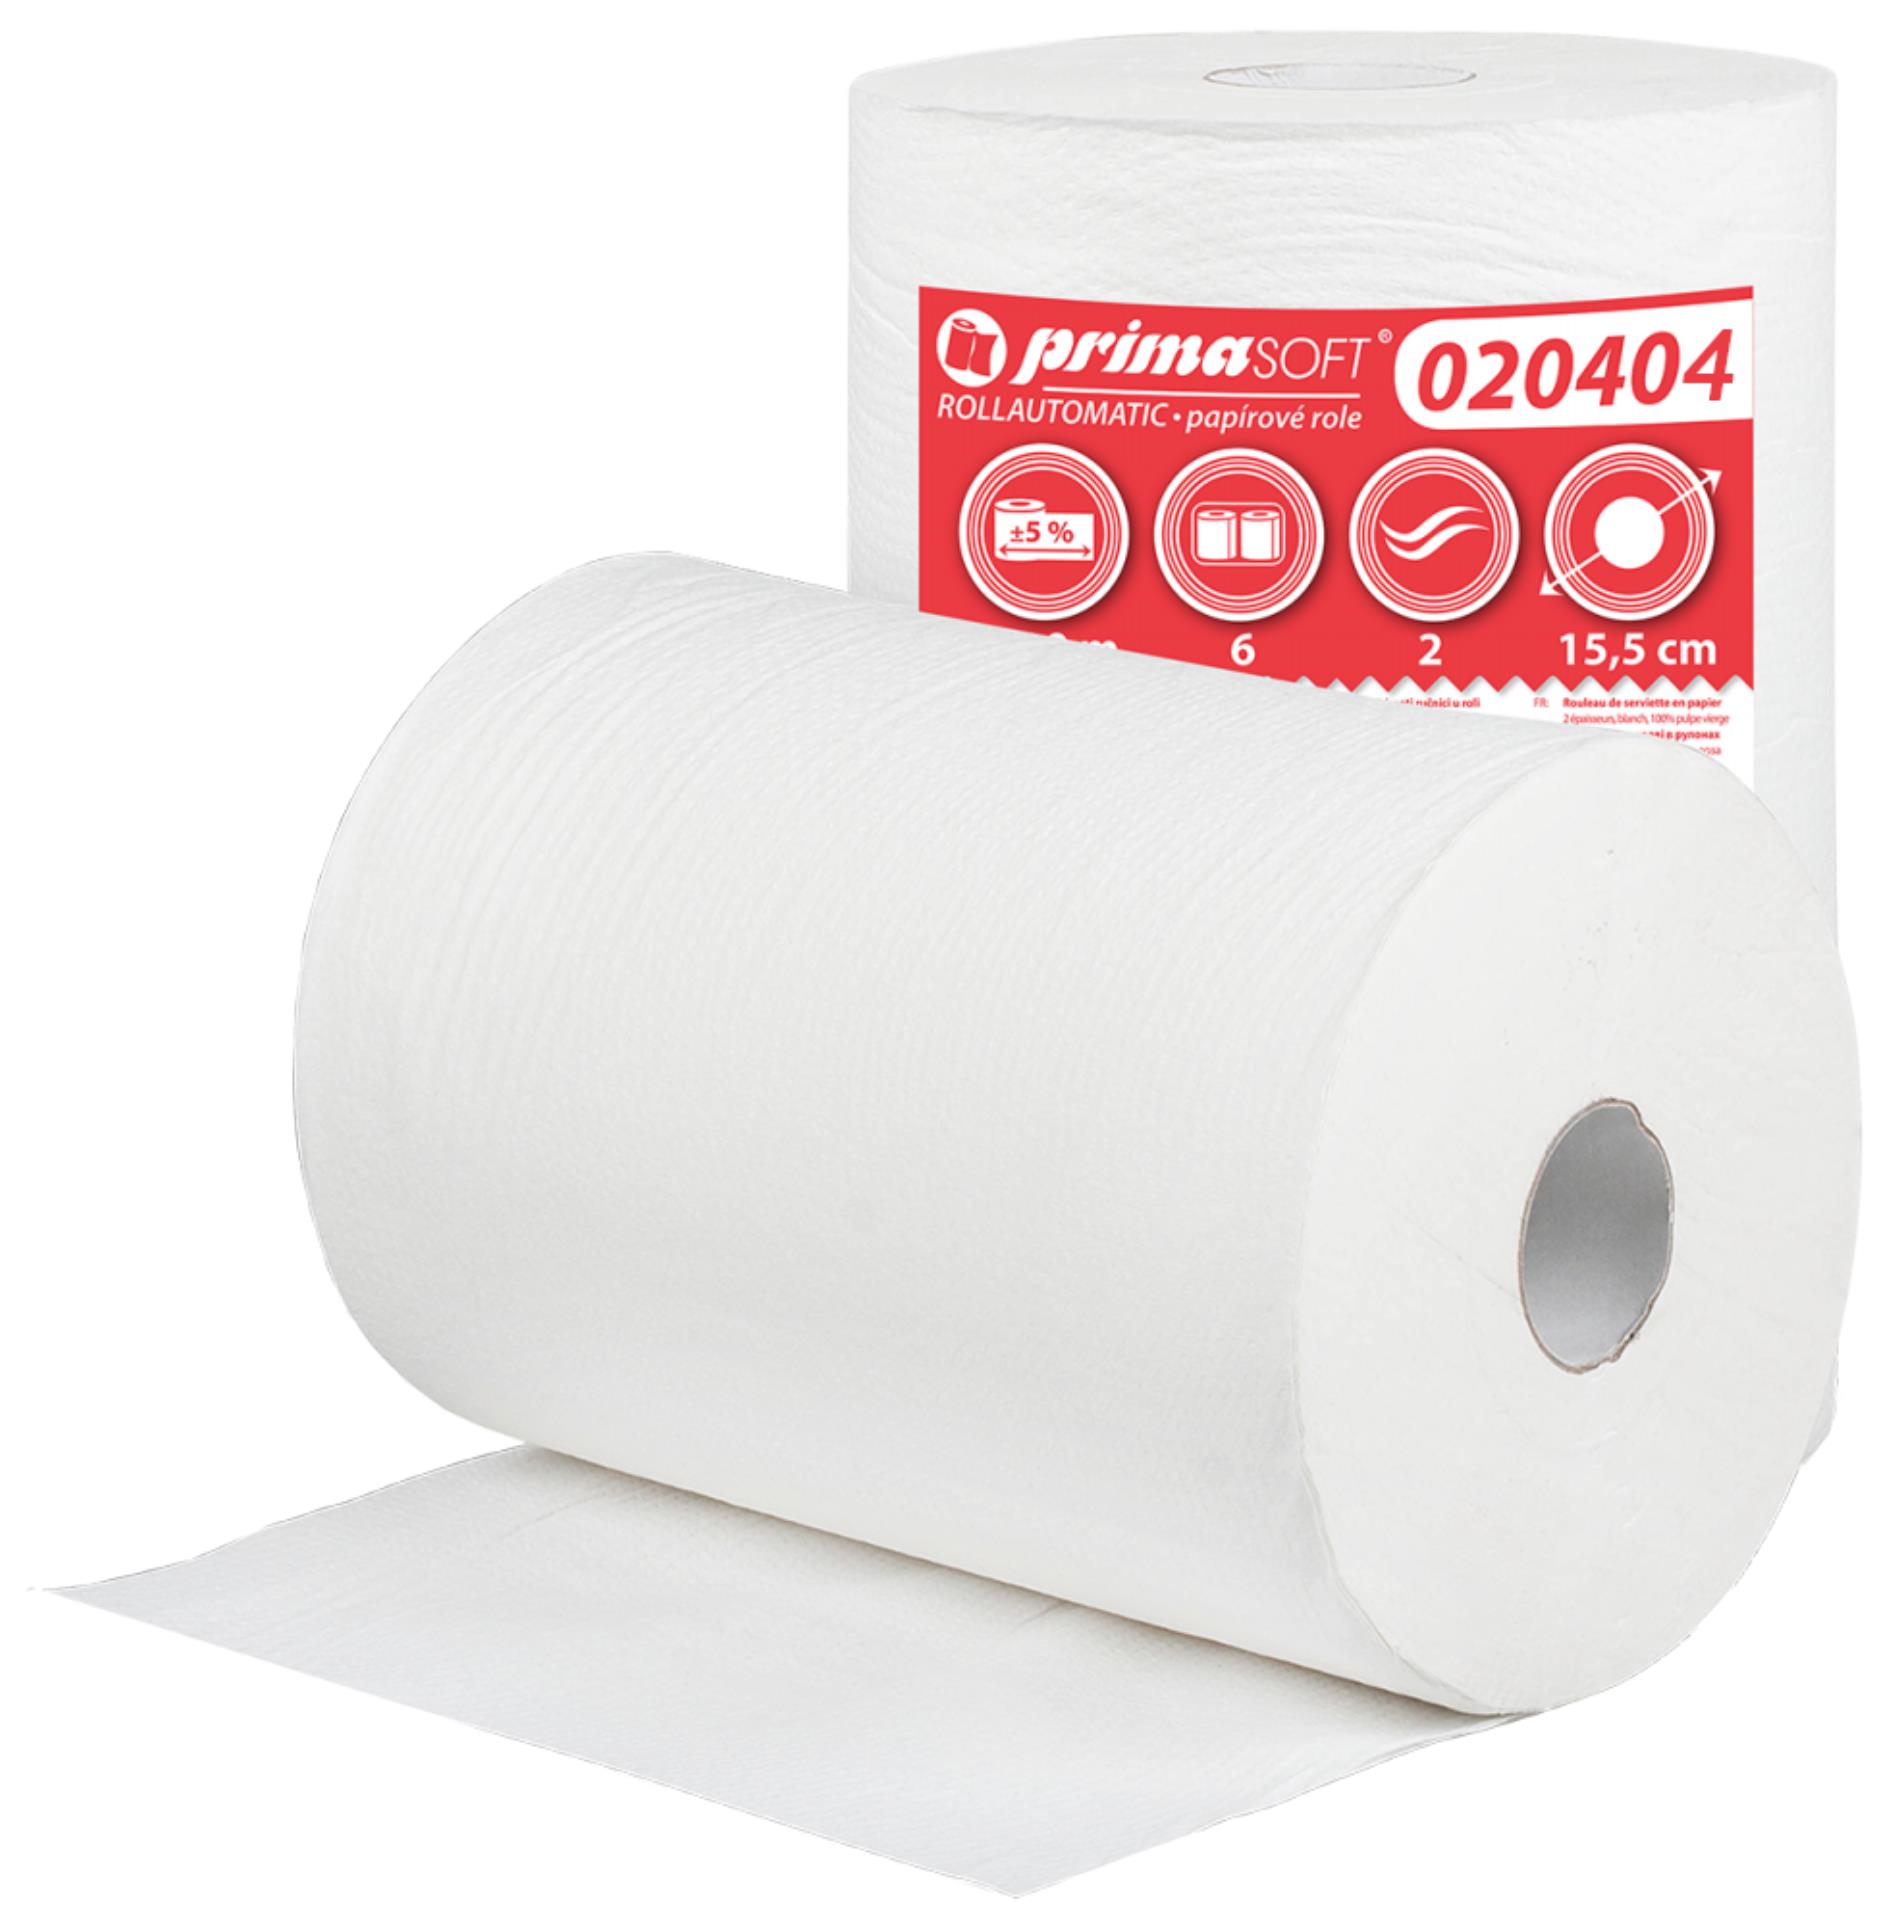 Primasoft Papírové ručníky v roli, dvouvrstvé, celulóza, 150 m, 6 rolí